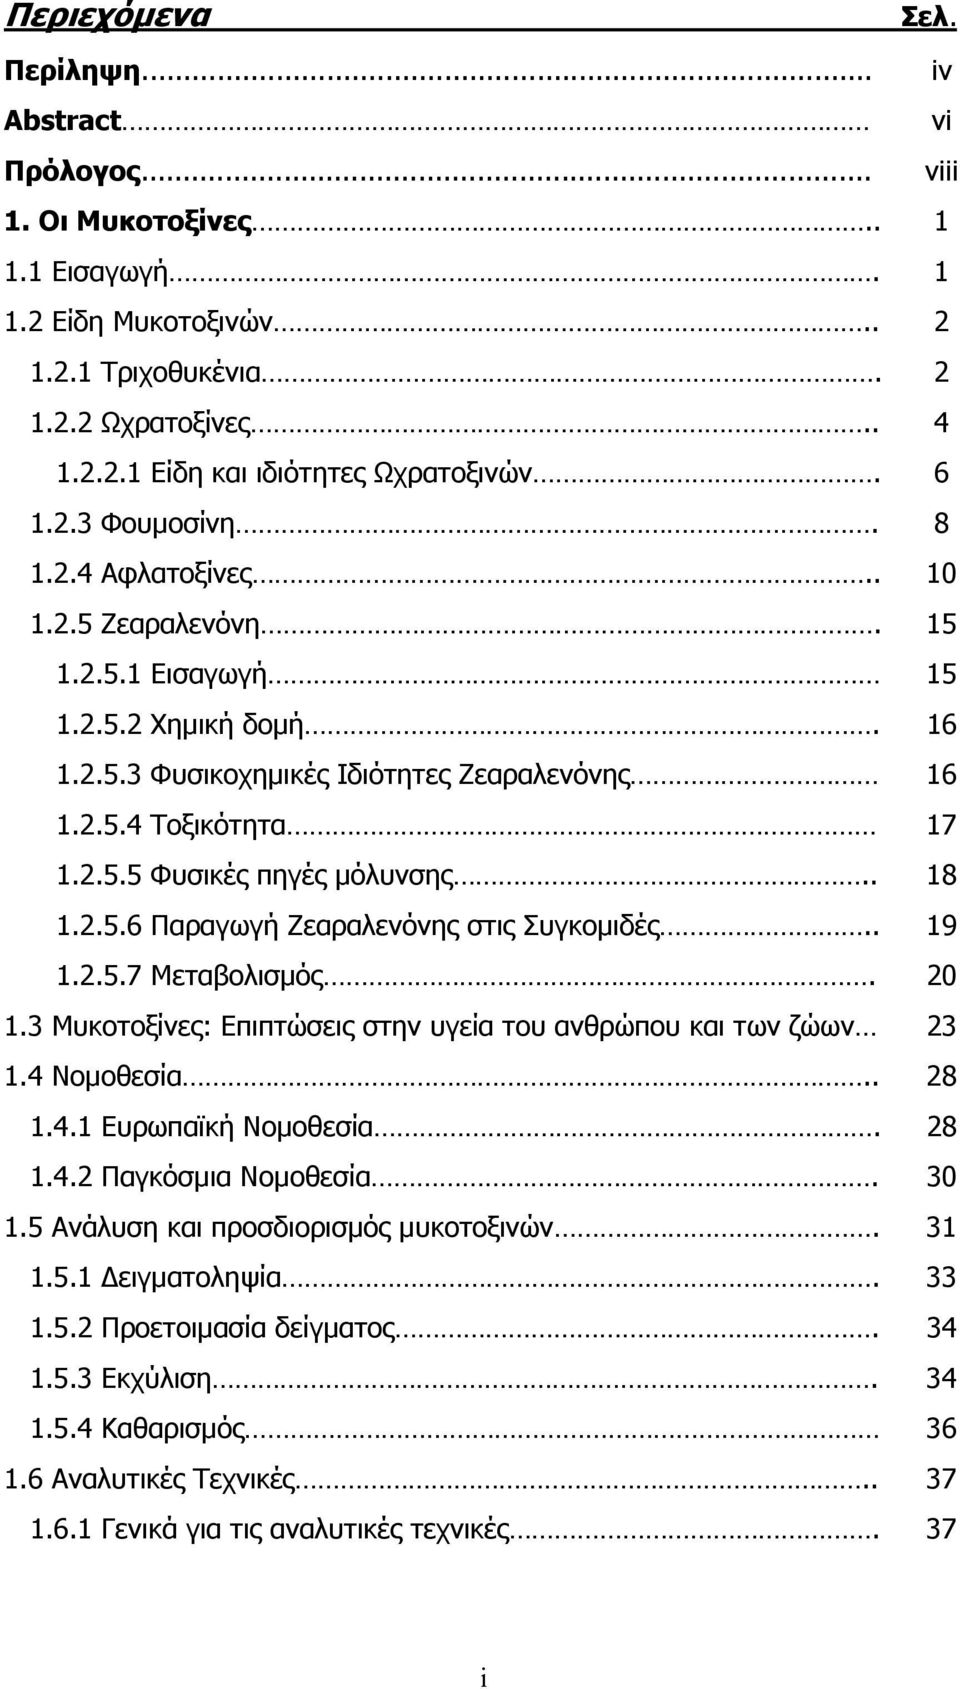 . 18 1.2.5.6 Παραγωγή Ζεαραλενόνης στις Συγκοµιδές.. 19 1.2.5.7 Μεταβολισµός. 20 1.3 Μυκοτοξίνες: Επιπτώσεις στην υγεία του ανθρώπου και των ζώων 23 1.4 Νοµοθεσία.. 28 1.4.1 Ευρωπαϊκή Νοµοθεσία. 28 1.4.2 Παγκόσµια Νοµοθεσία.